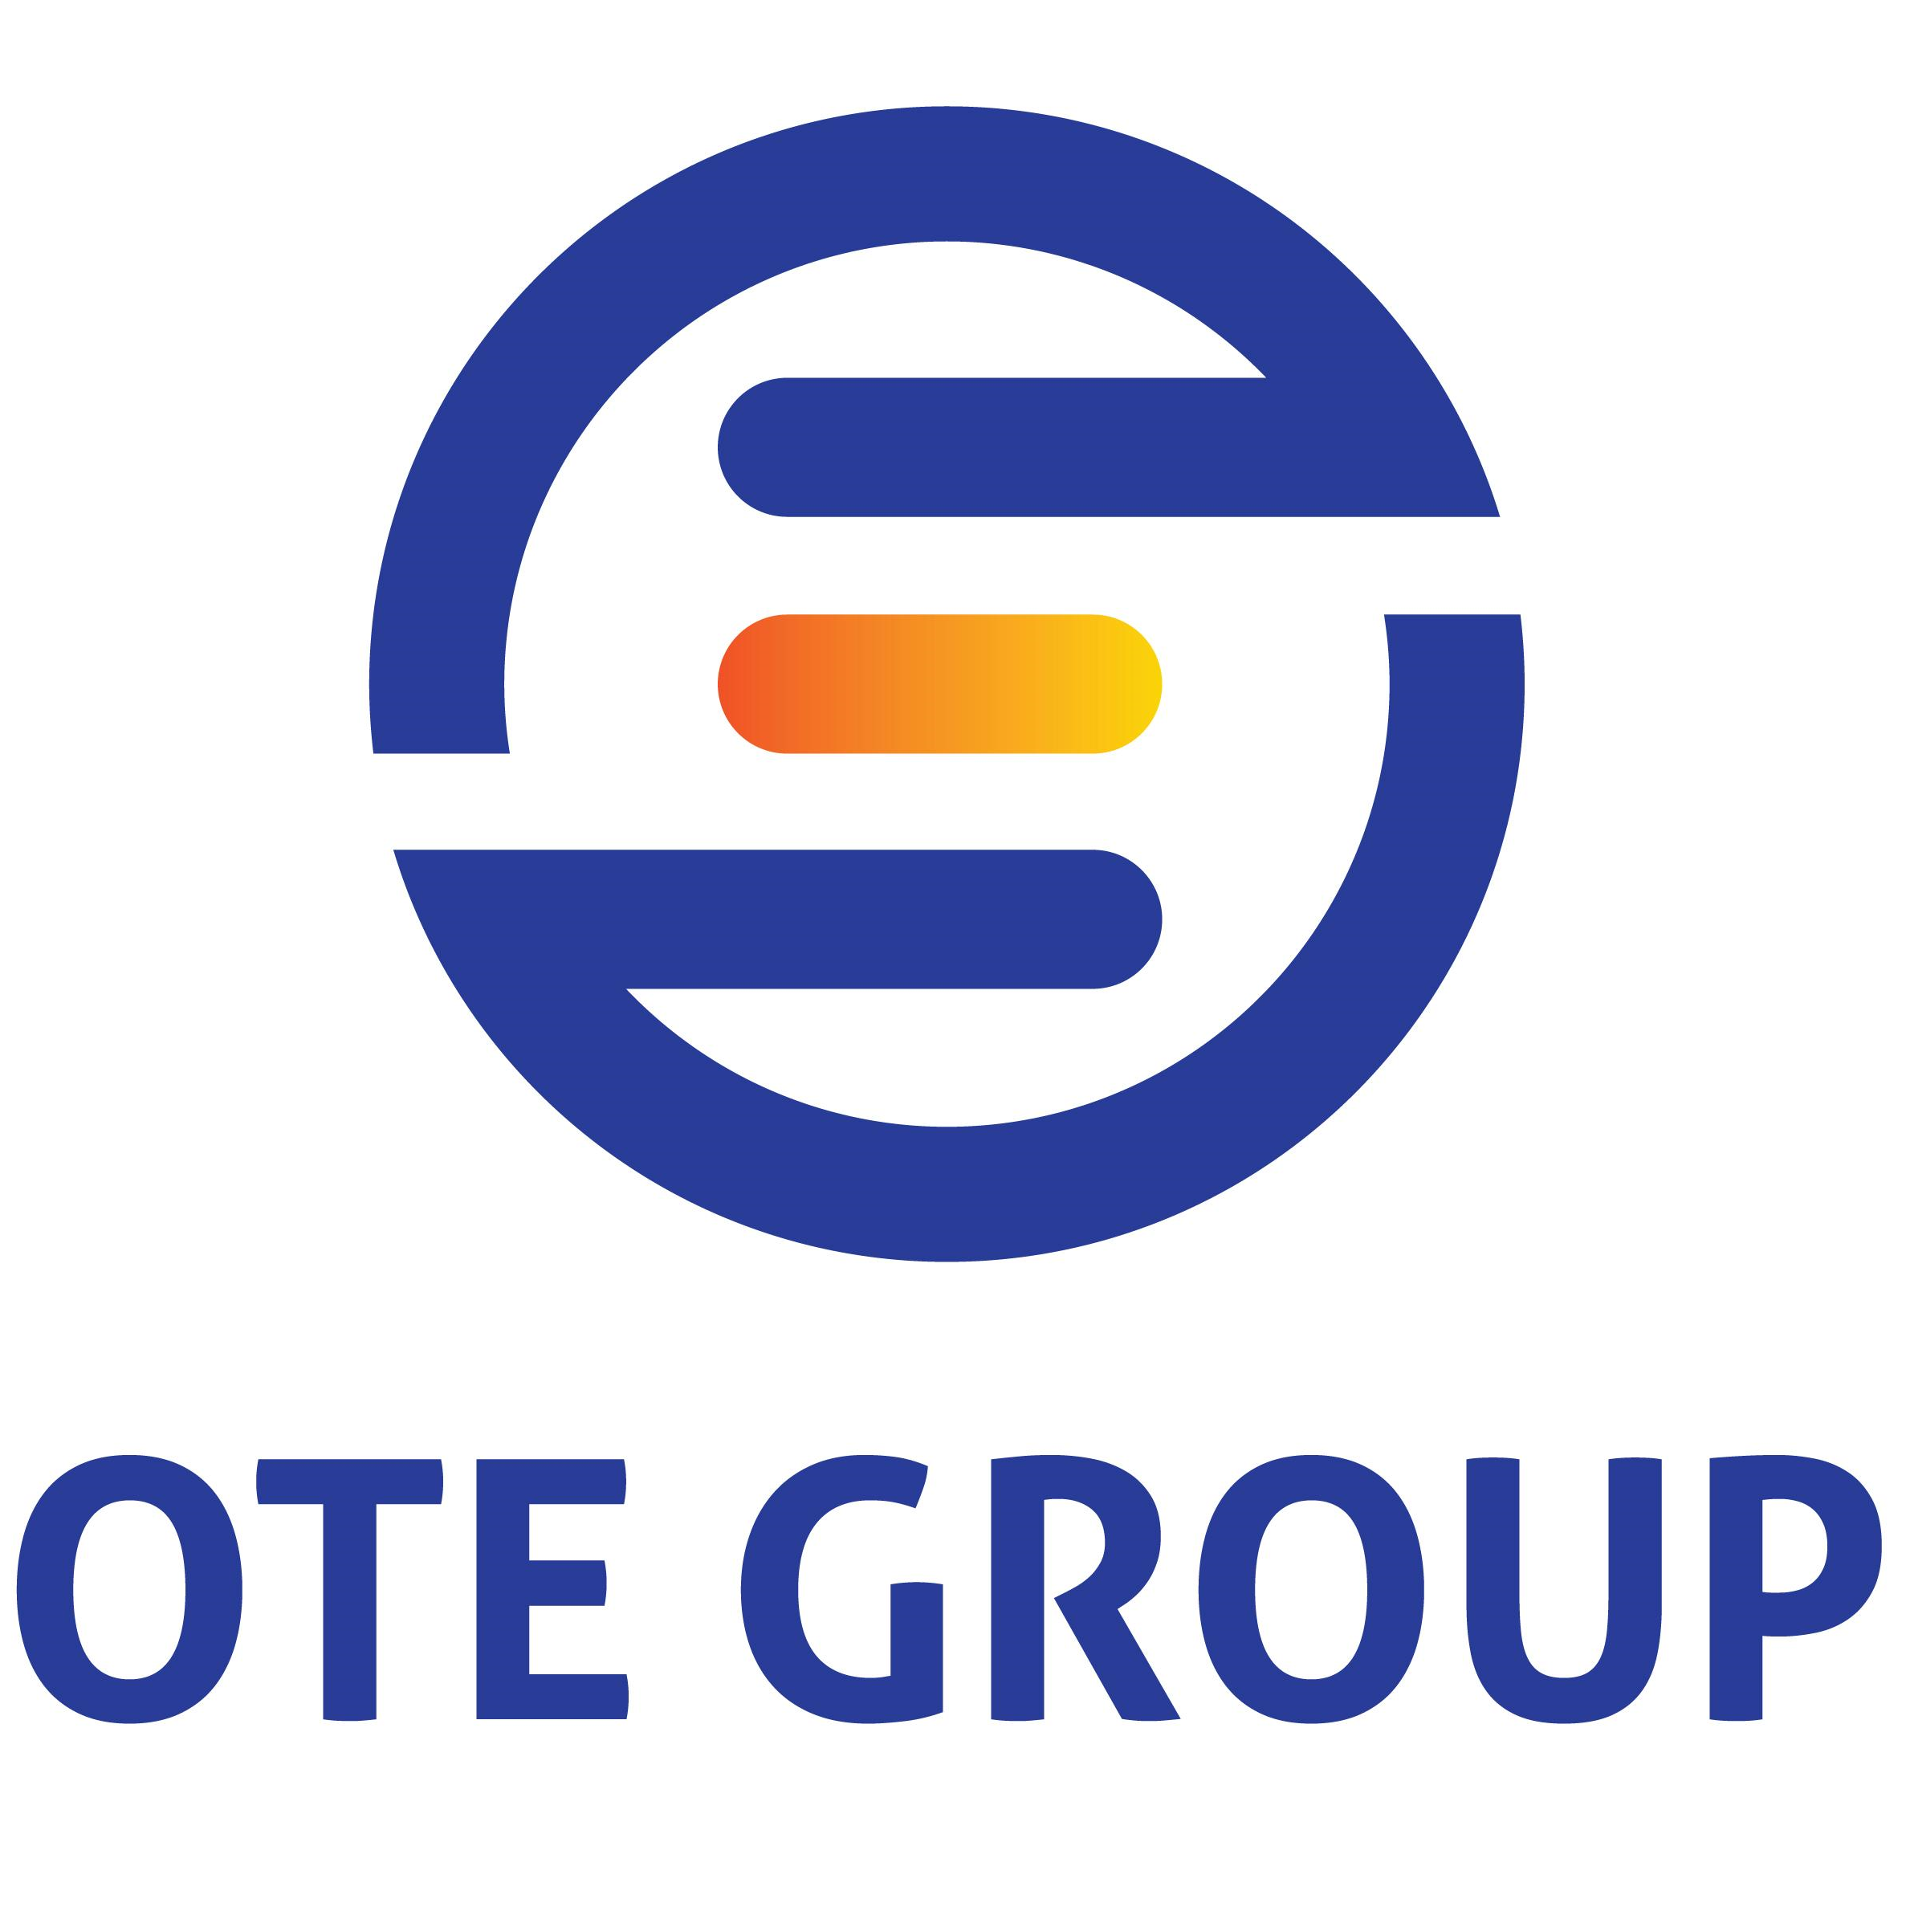 Logo Công ty cổ phần Ote Group